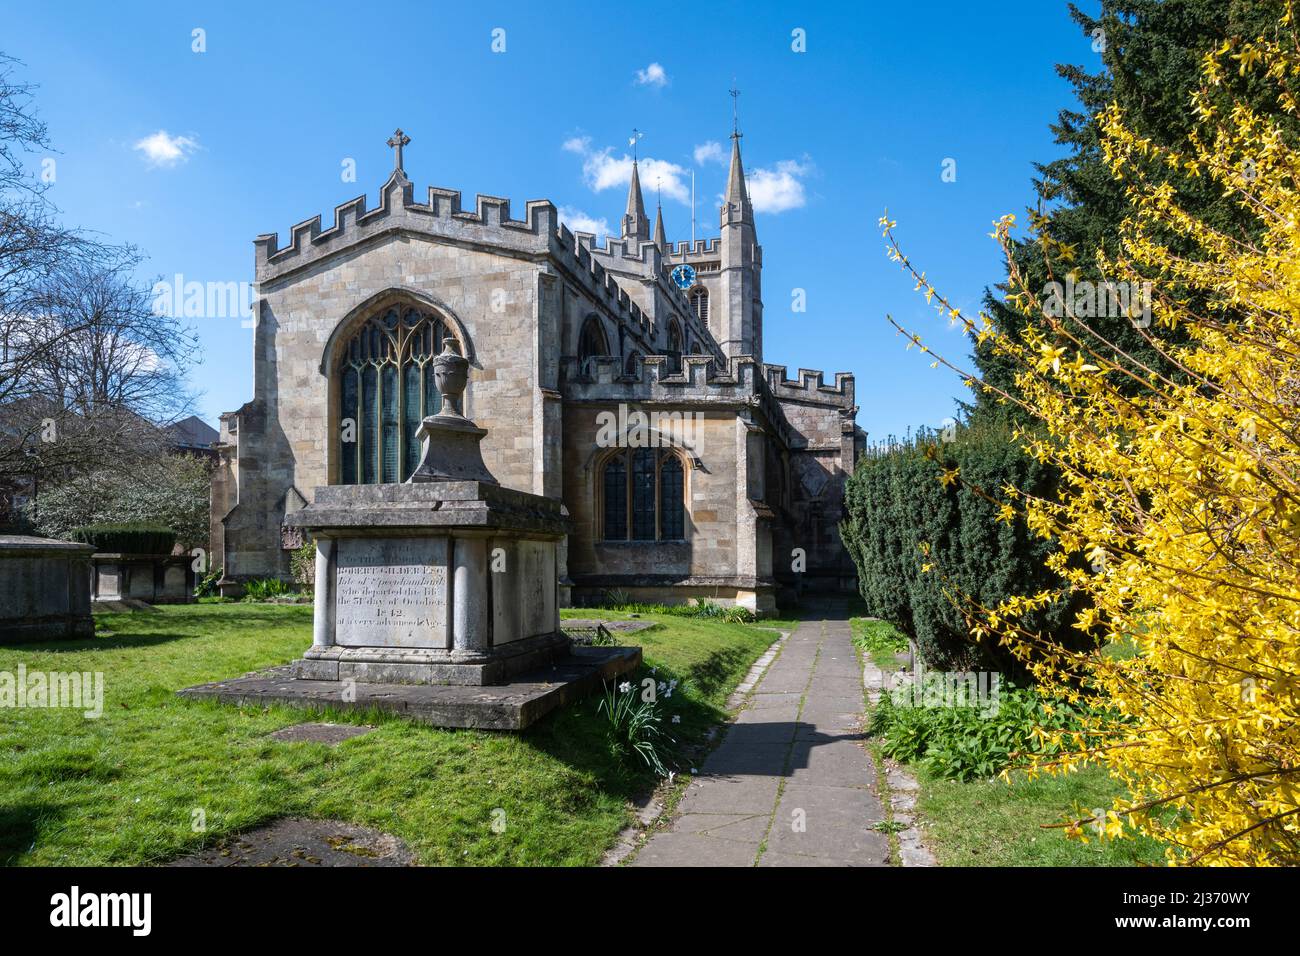 St Nicolas Church in Newbury, Berkshire, England, UK, during spring Stock Photo